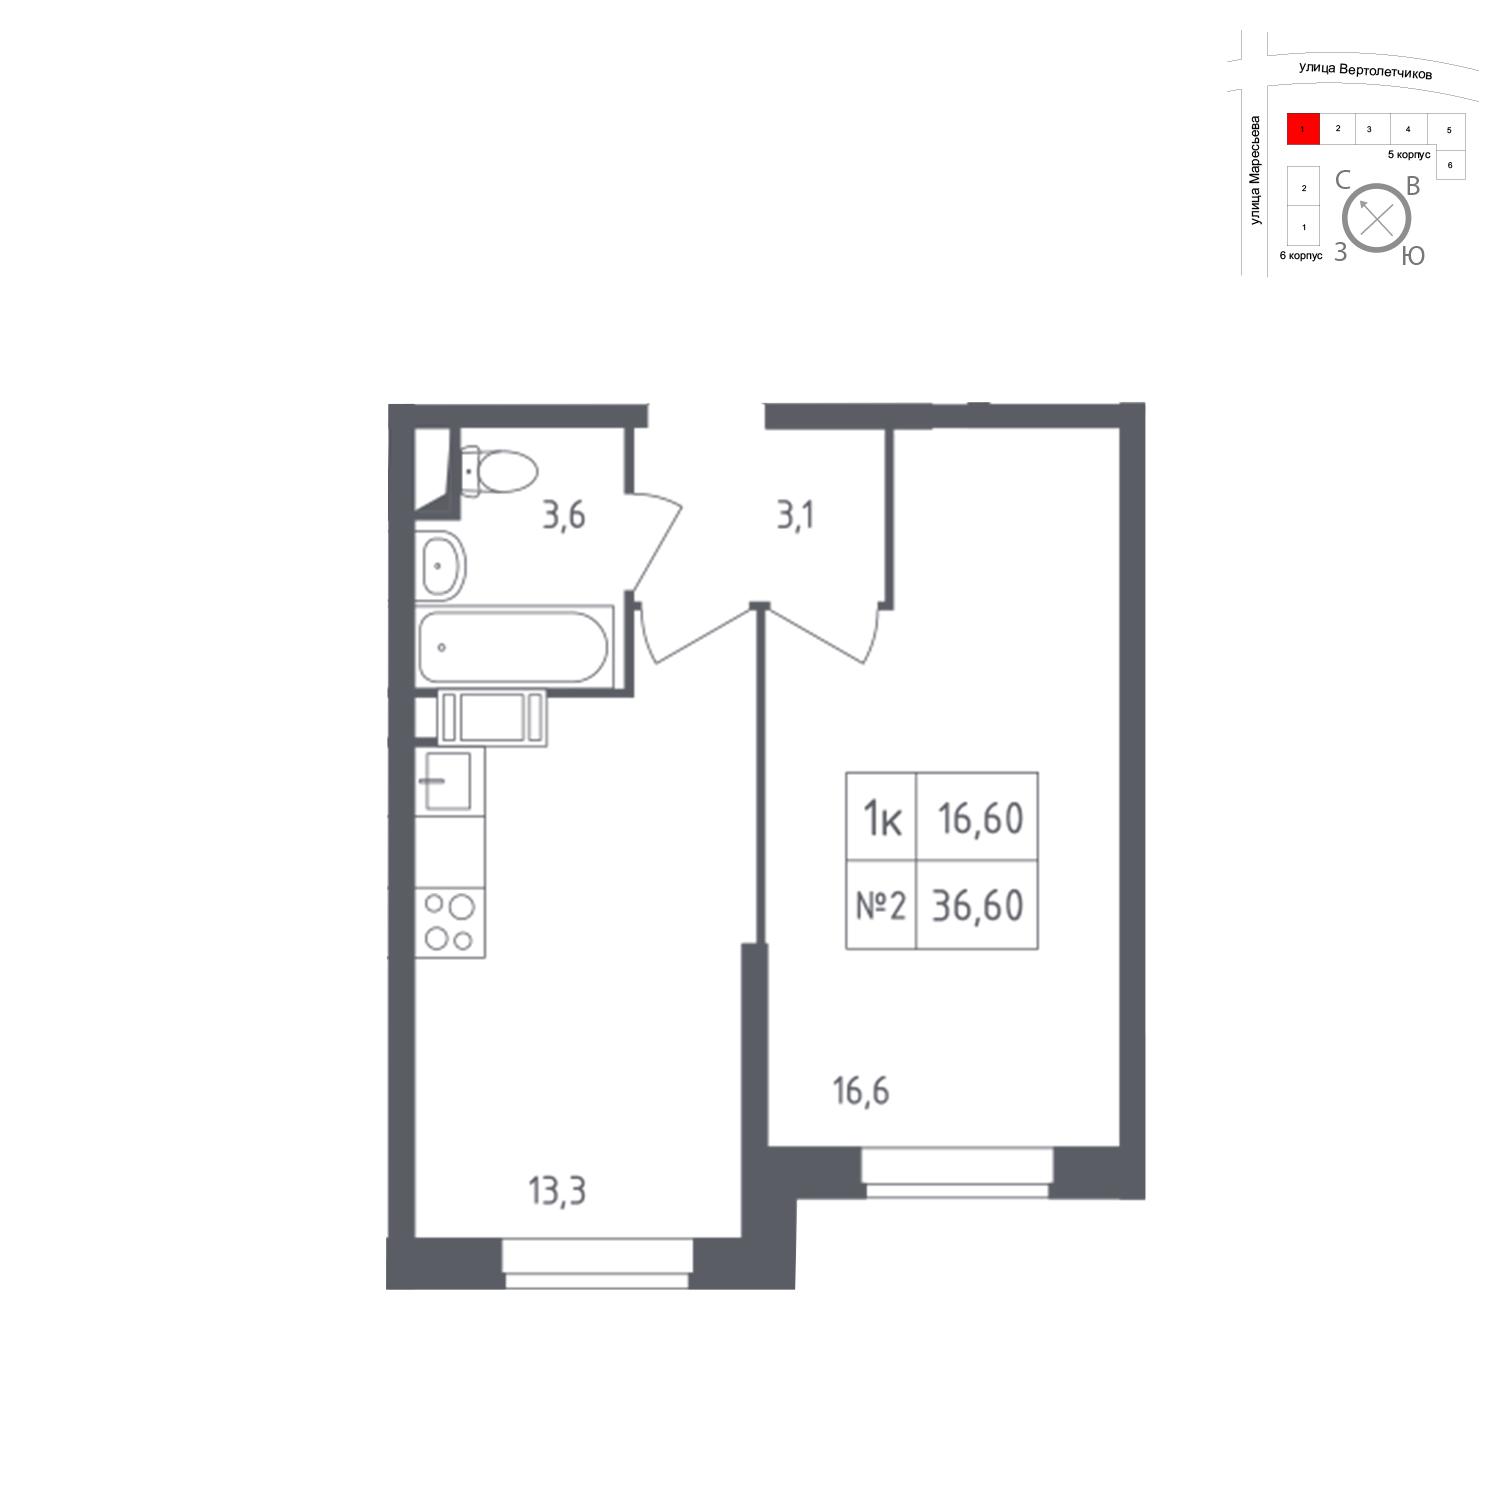 Продаётся 1-комнатная квартира в новостройке 36.6 кв.м. этаж 13/23 за 7 496 778 руб 